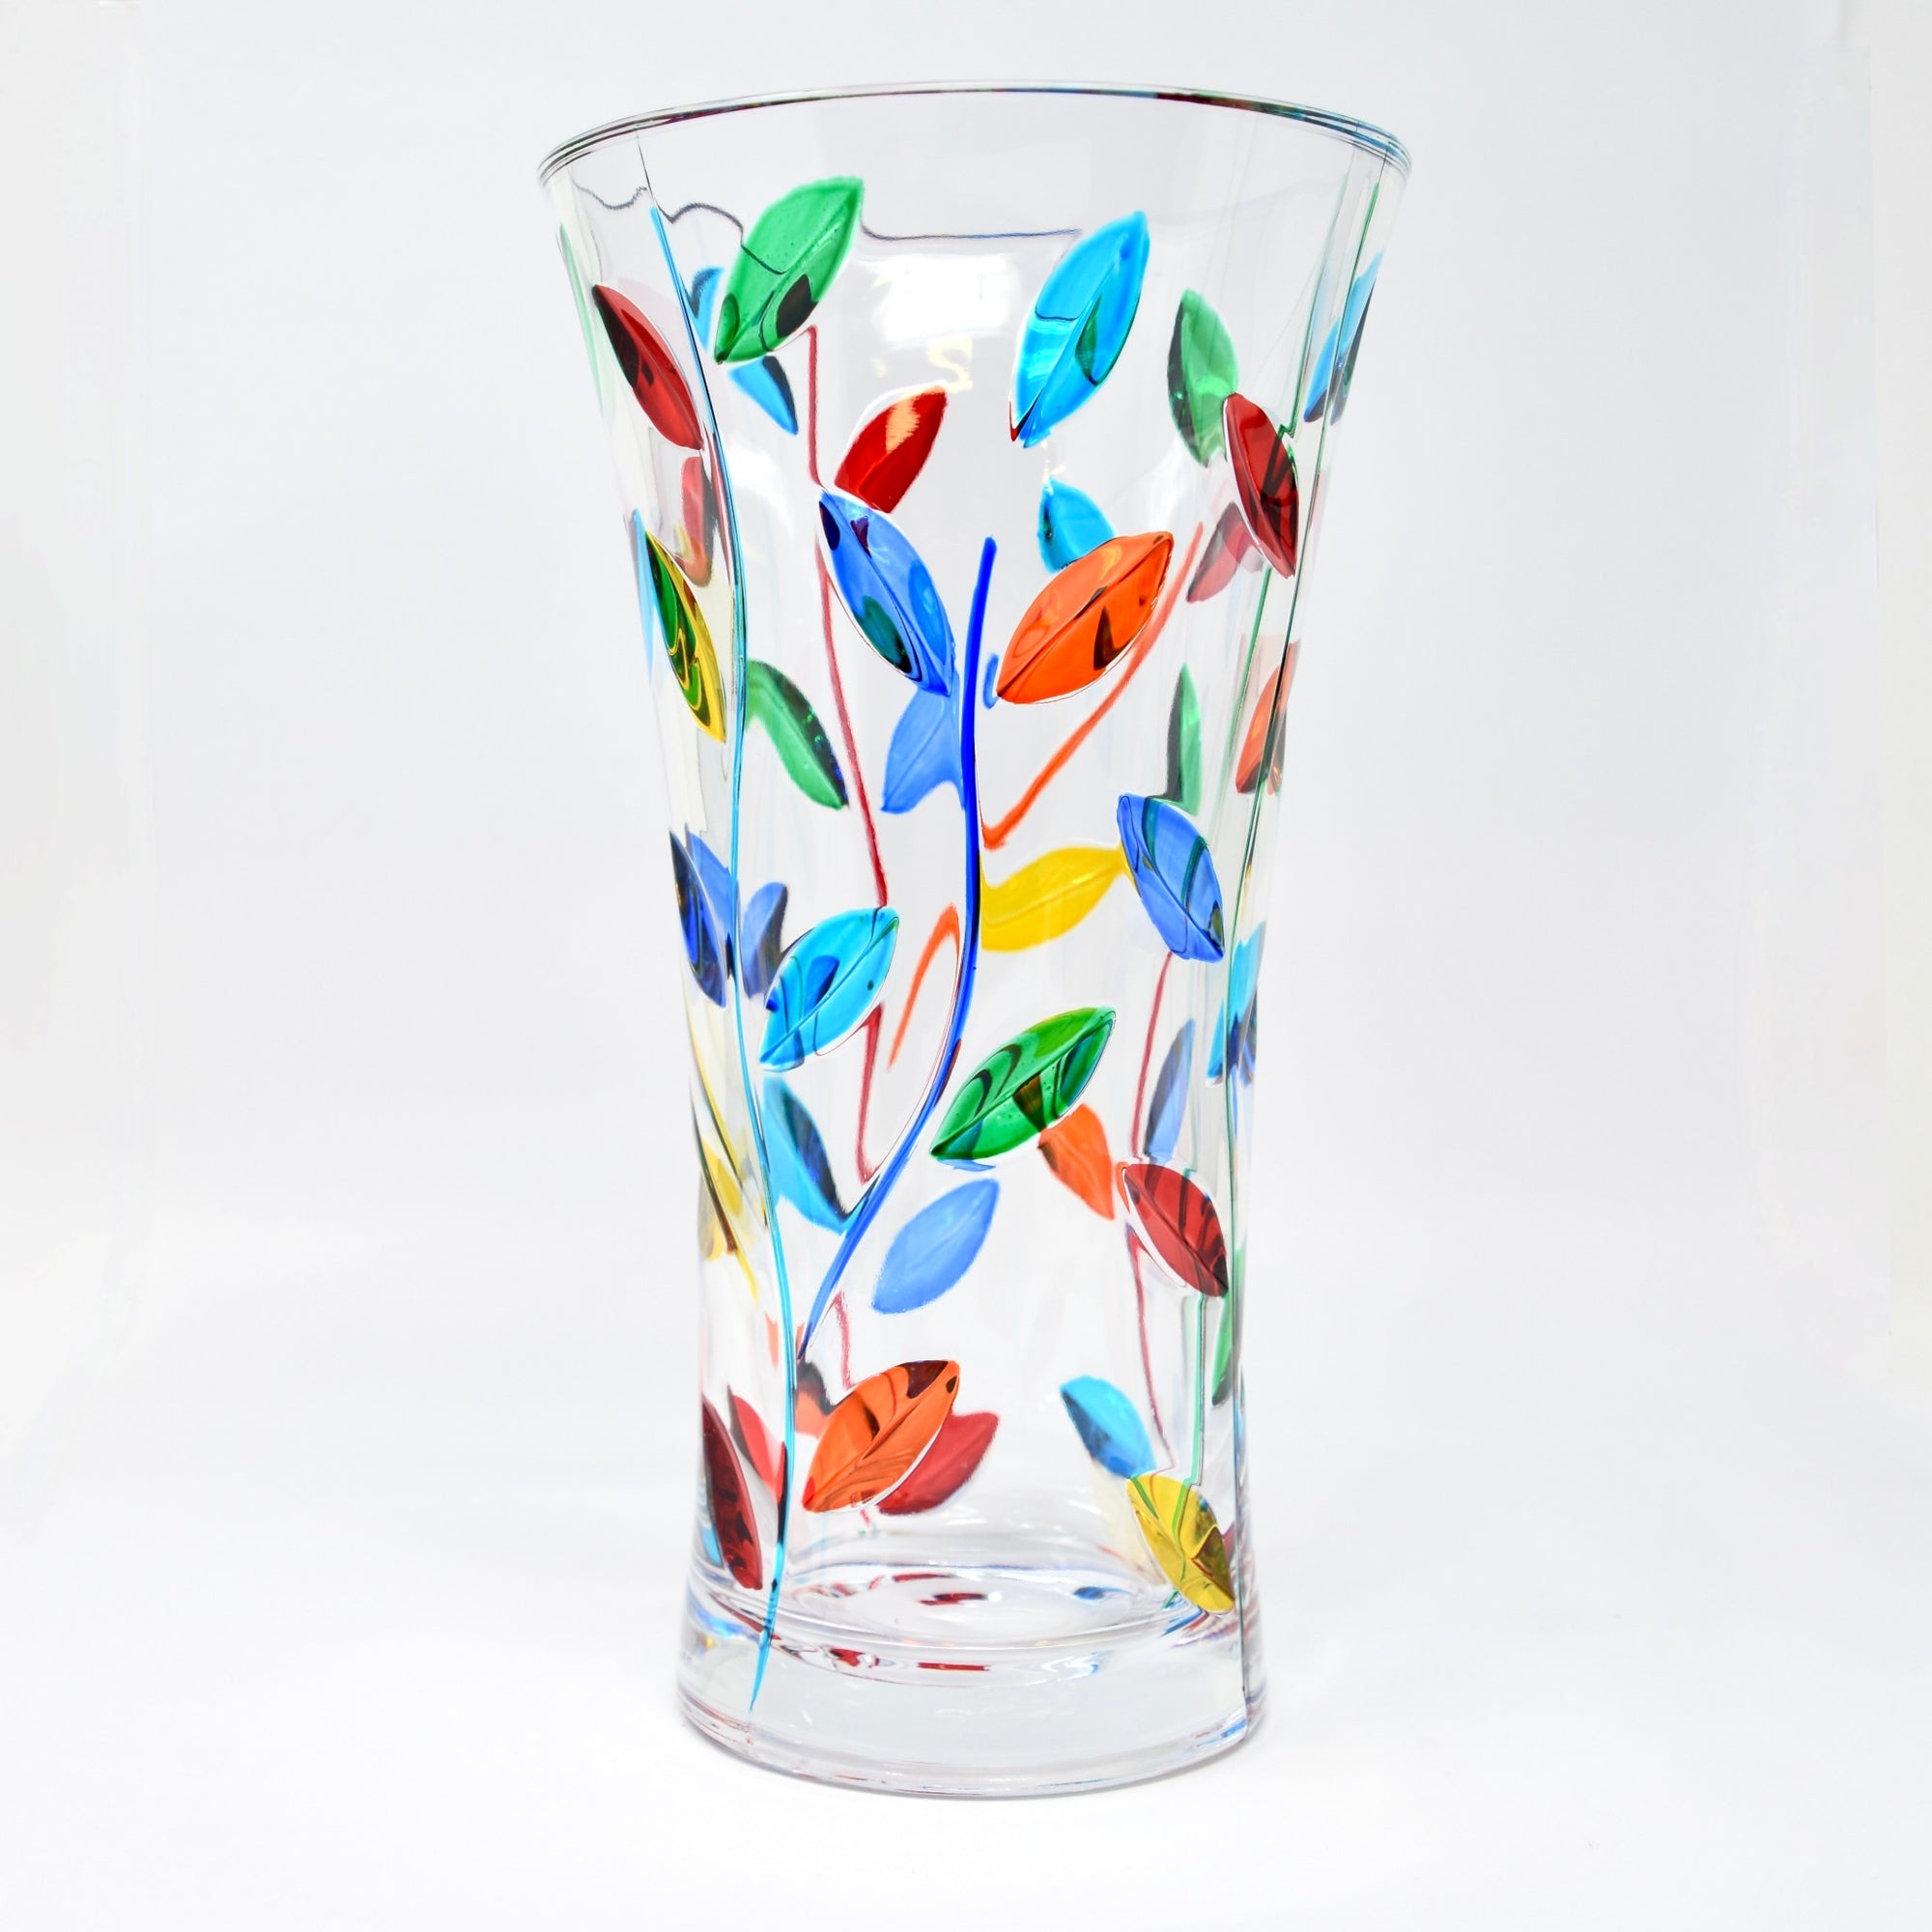 Flowervine - Tree of Life Vase 10", Medium, Hand Painted Italian Crystal - My Italian Decor